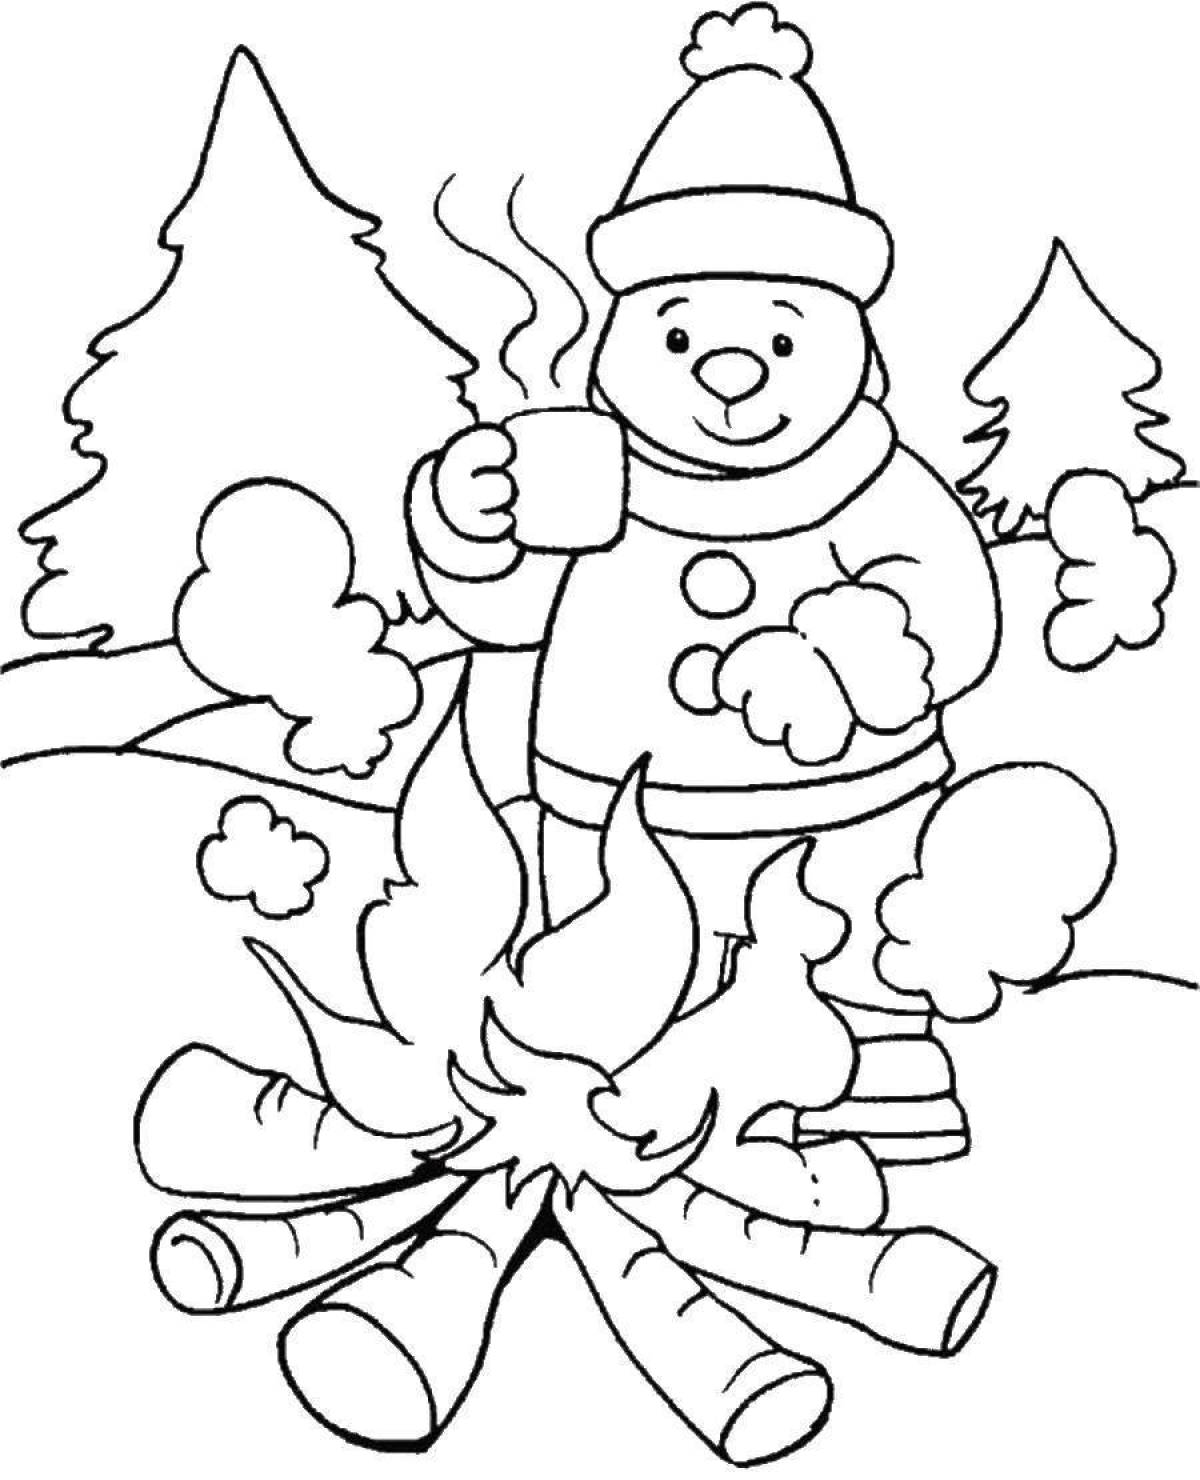 Праздничная раскраска зима для детей 4-5 лет